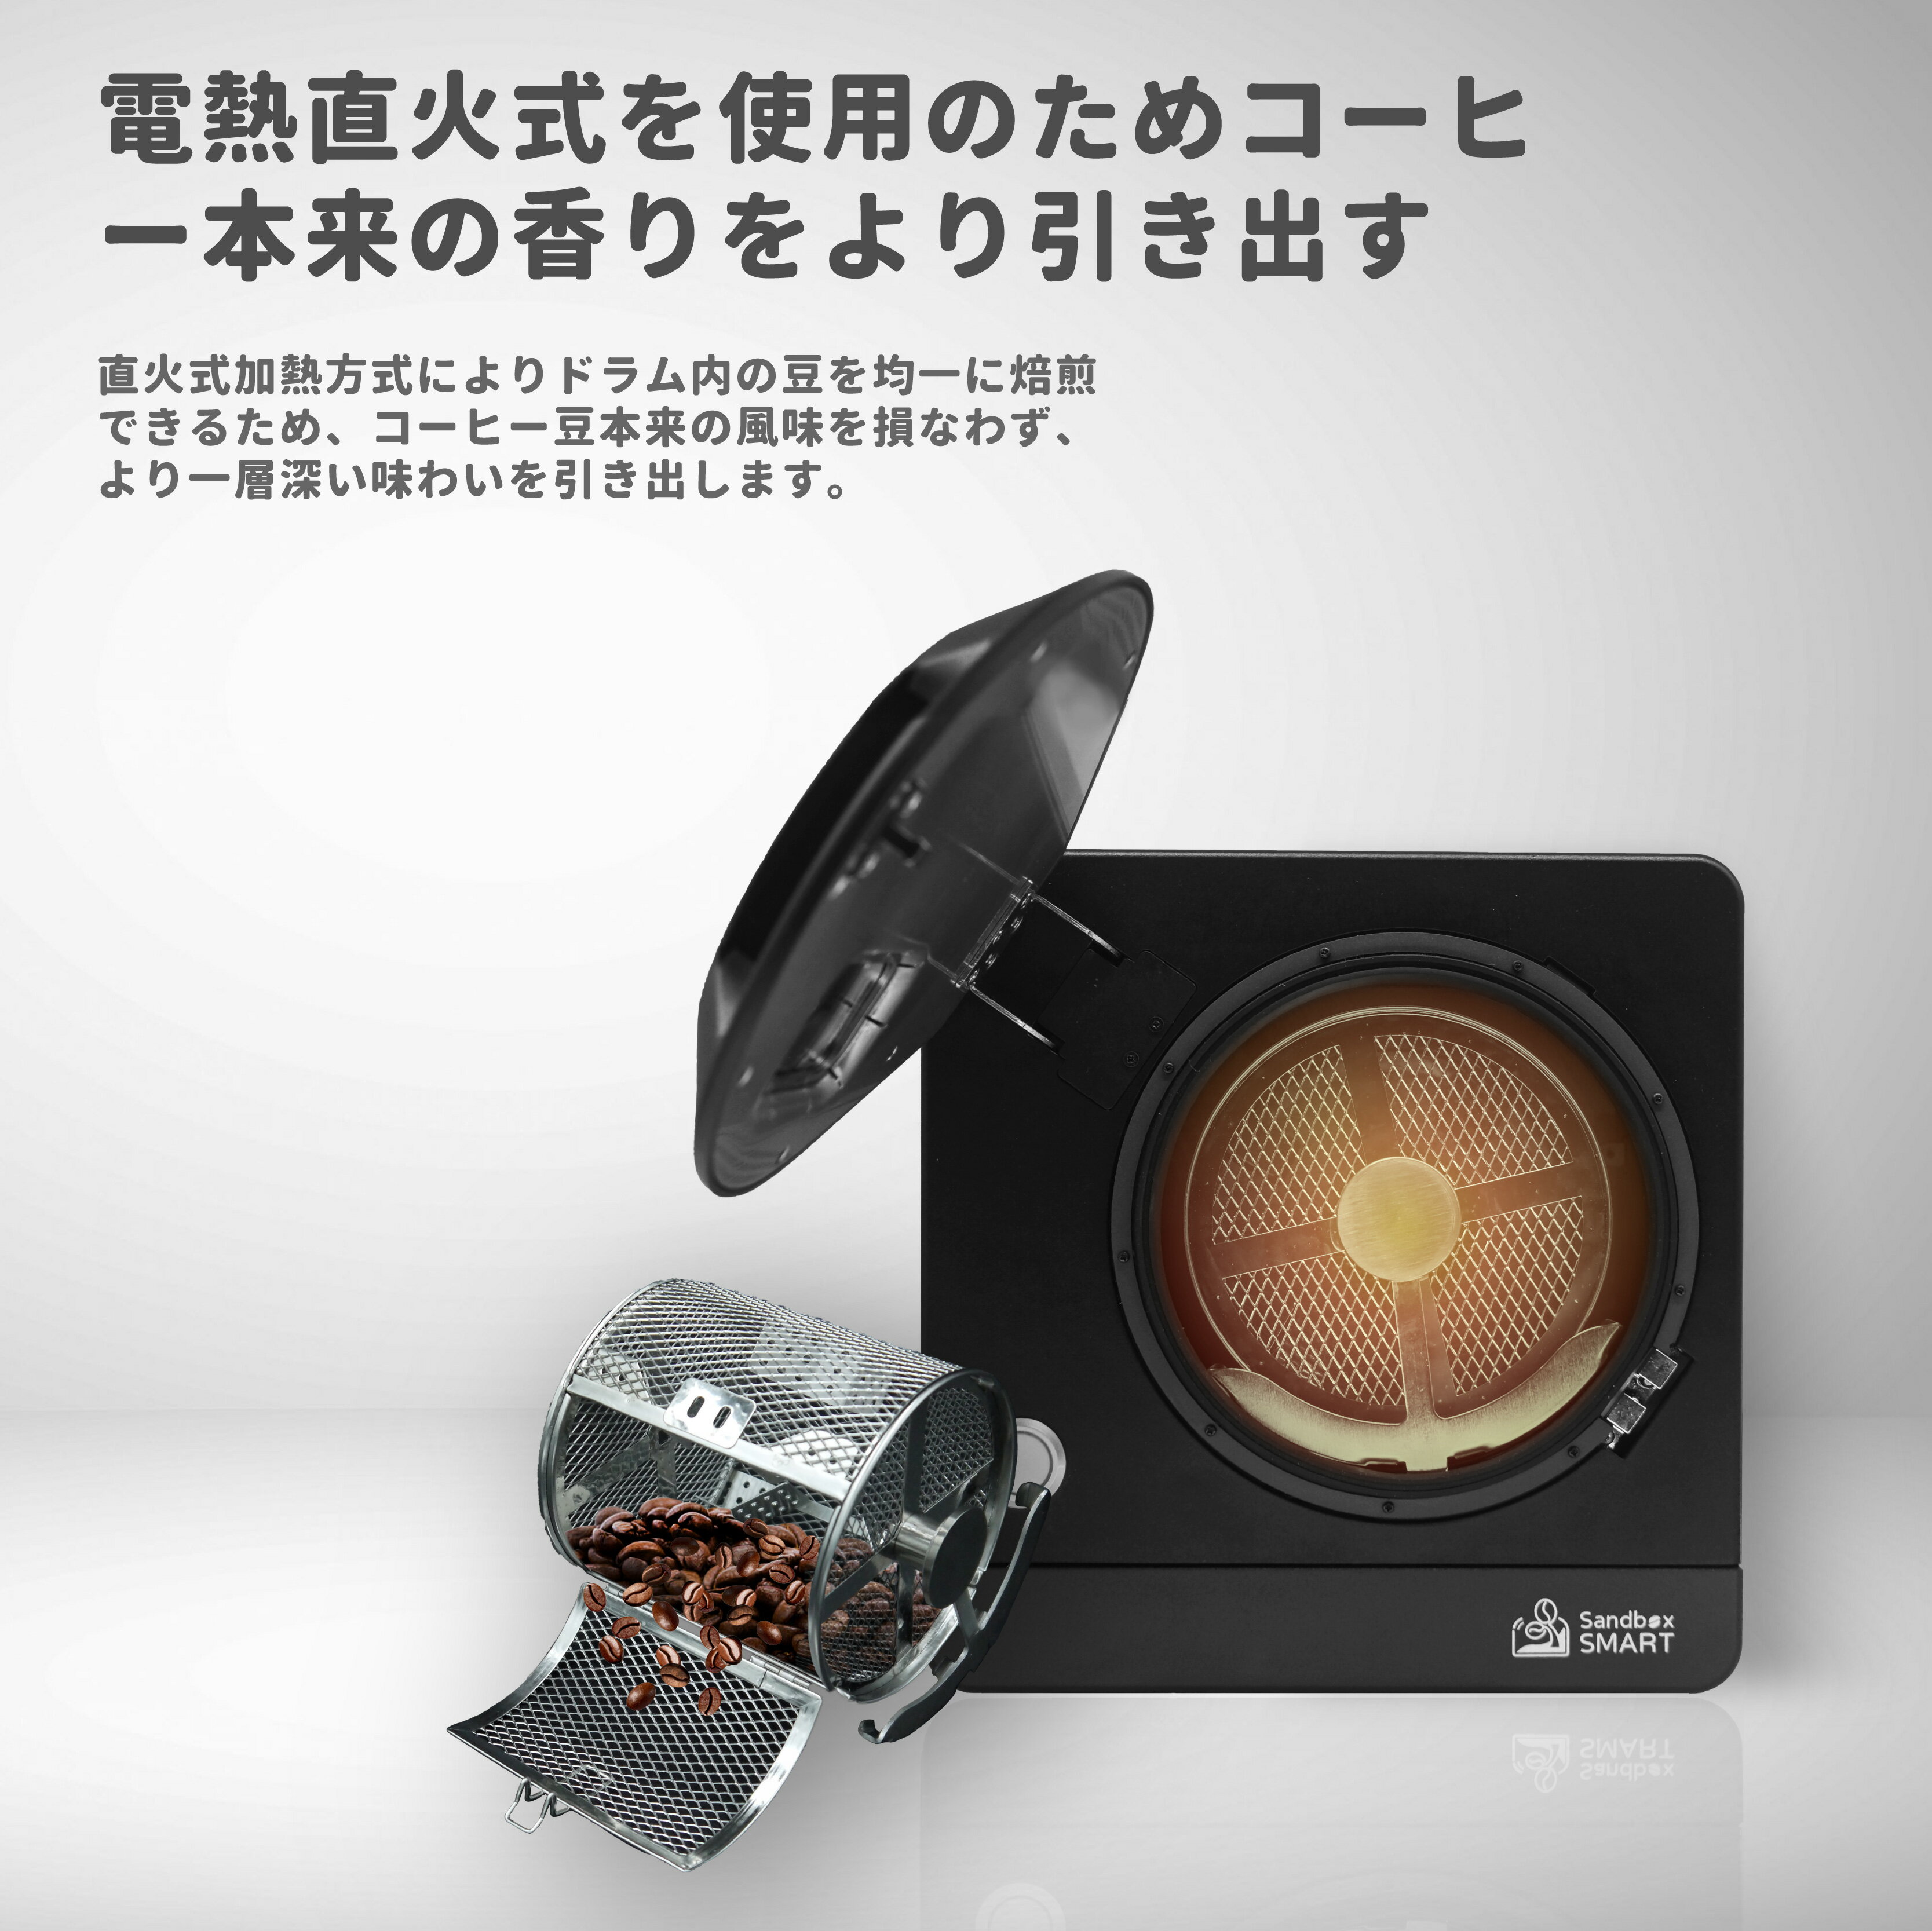 正規品 送料無料 コーヒー焙煎機 SANDBOX SMART R1 コーヒーロースター R1 珈琲焙煎機 コーヒー豆 焙煎器 生豆 コーヒー 自家焙煎 家庭用焙煎機 3